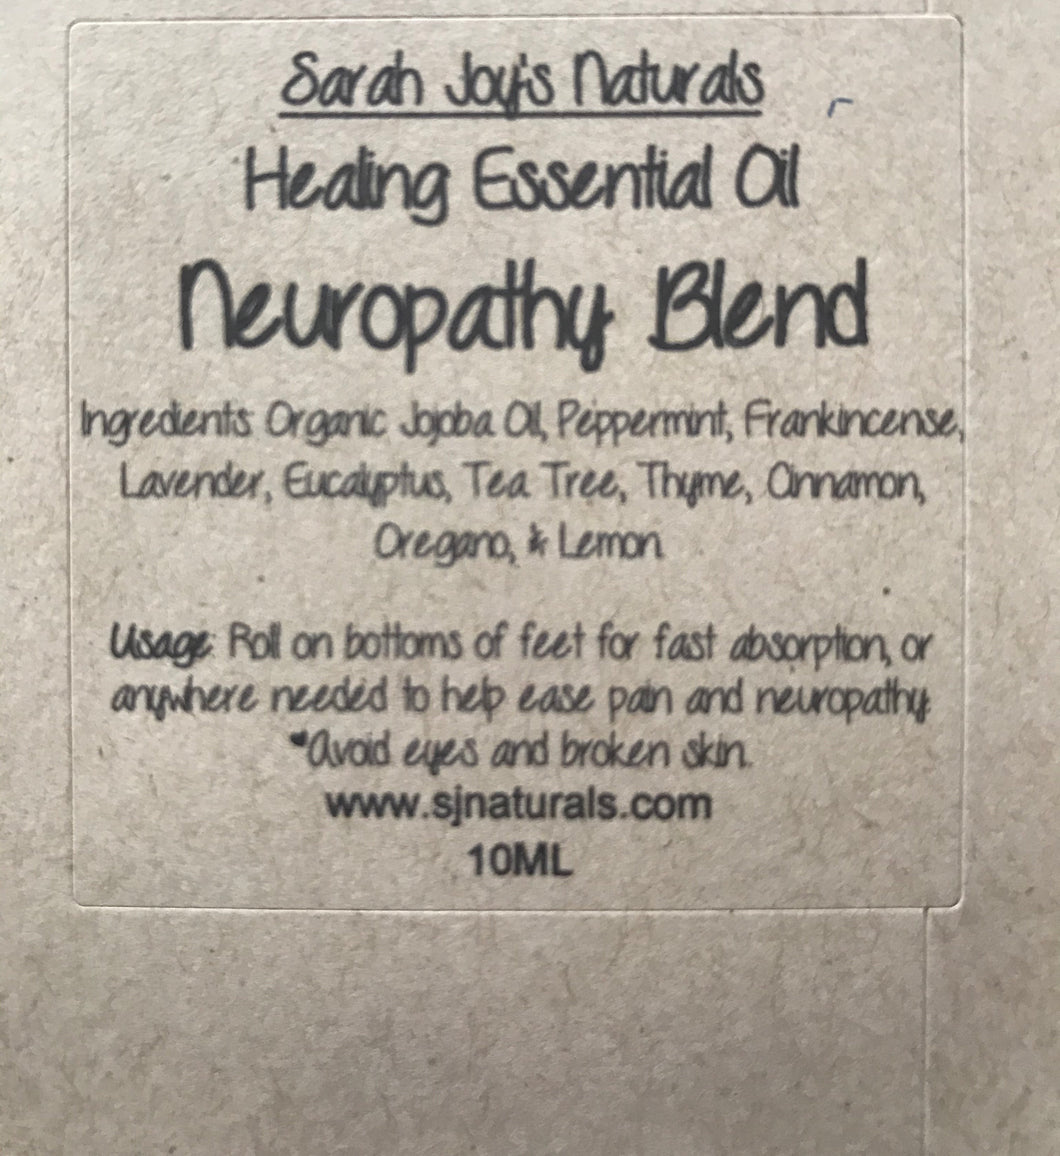 Neuropathy Blend